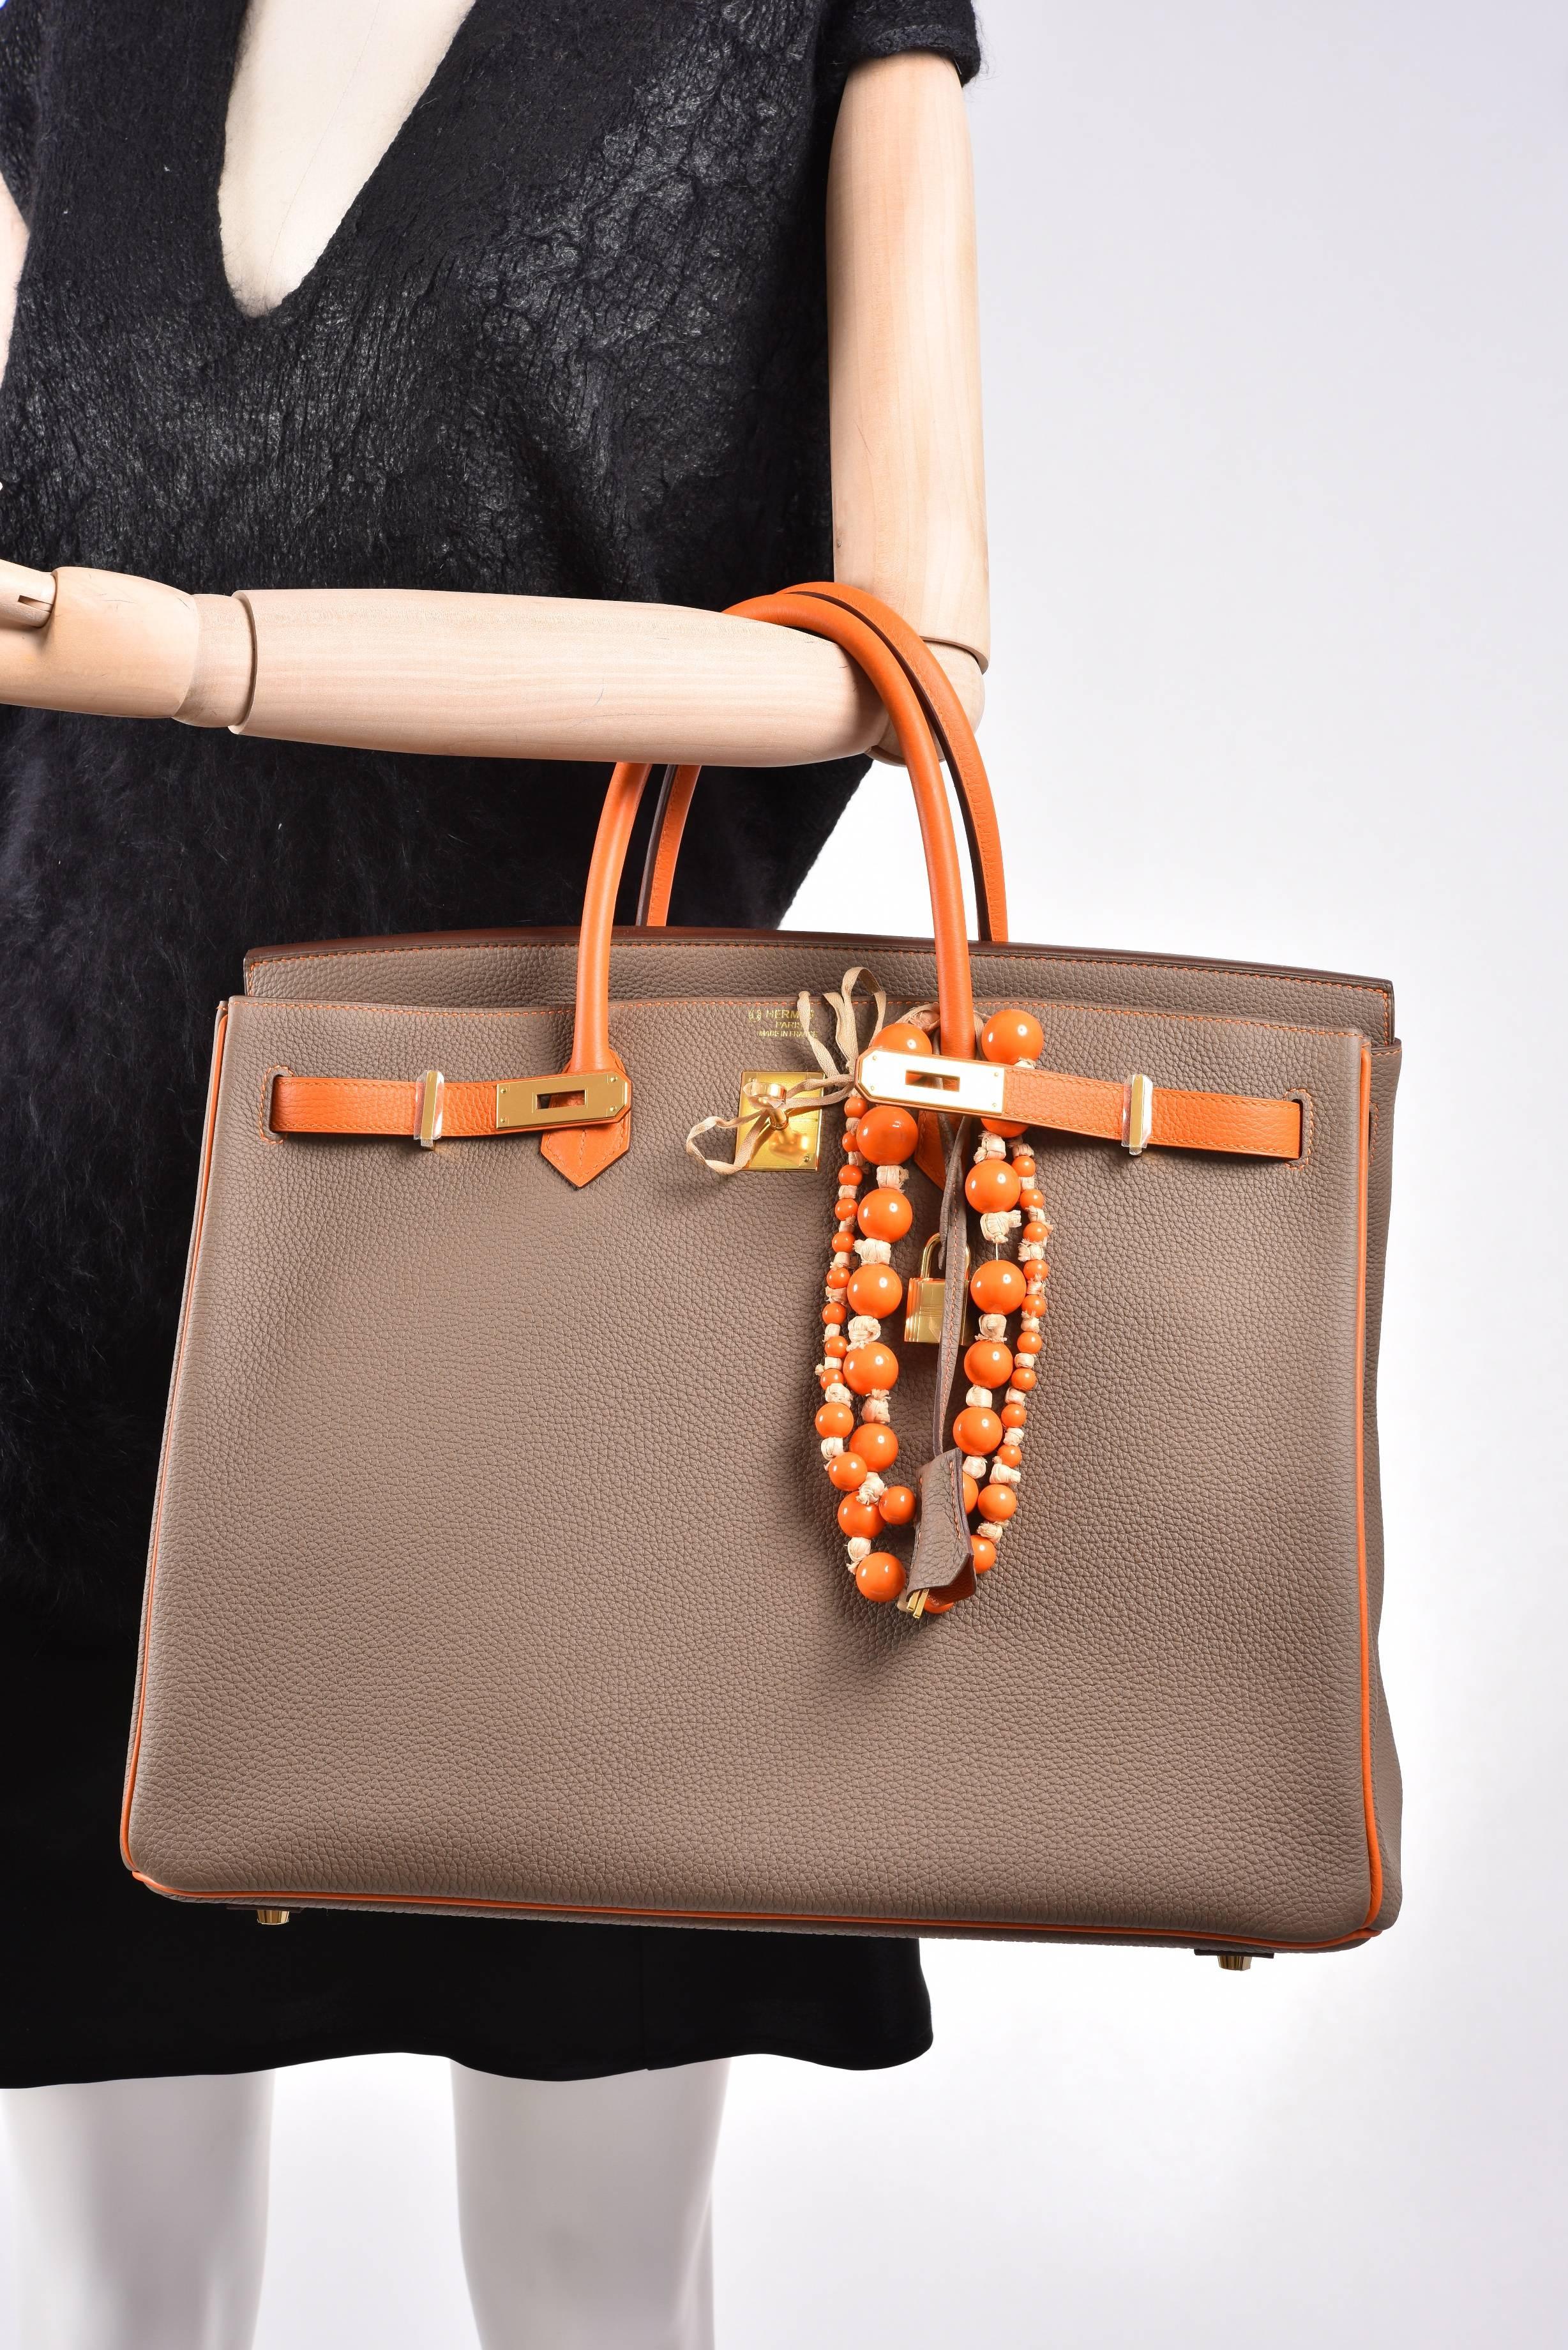 Hermes Birkin Bag Etoupe 40cm Special Order with Orange Gold Hardware JaneFinds 5